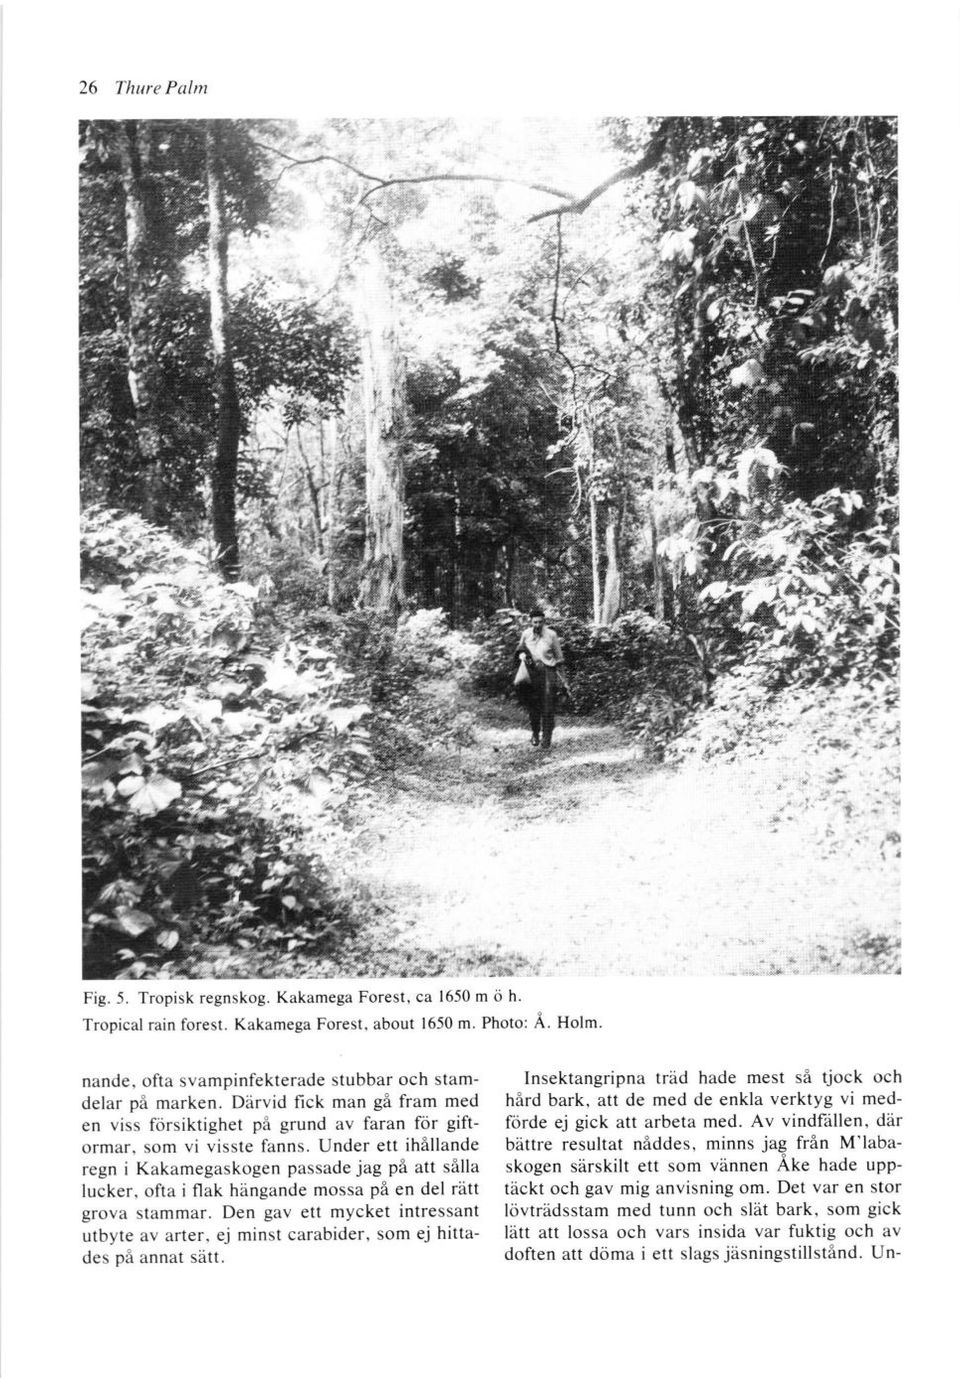 Kakamega Forest, ca 1650 m o h.